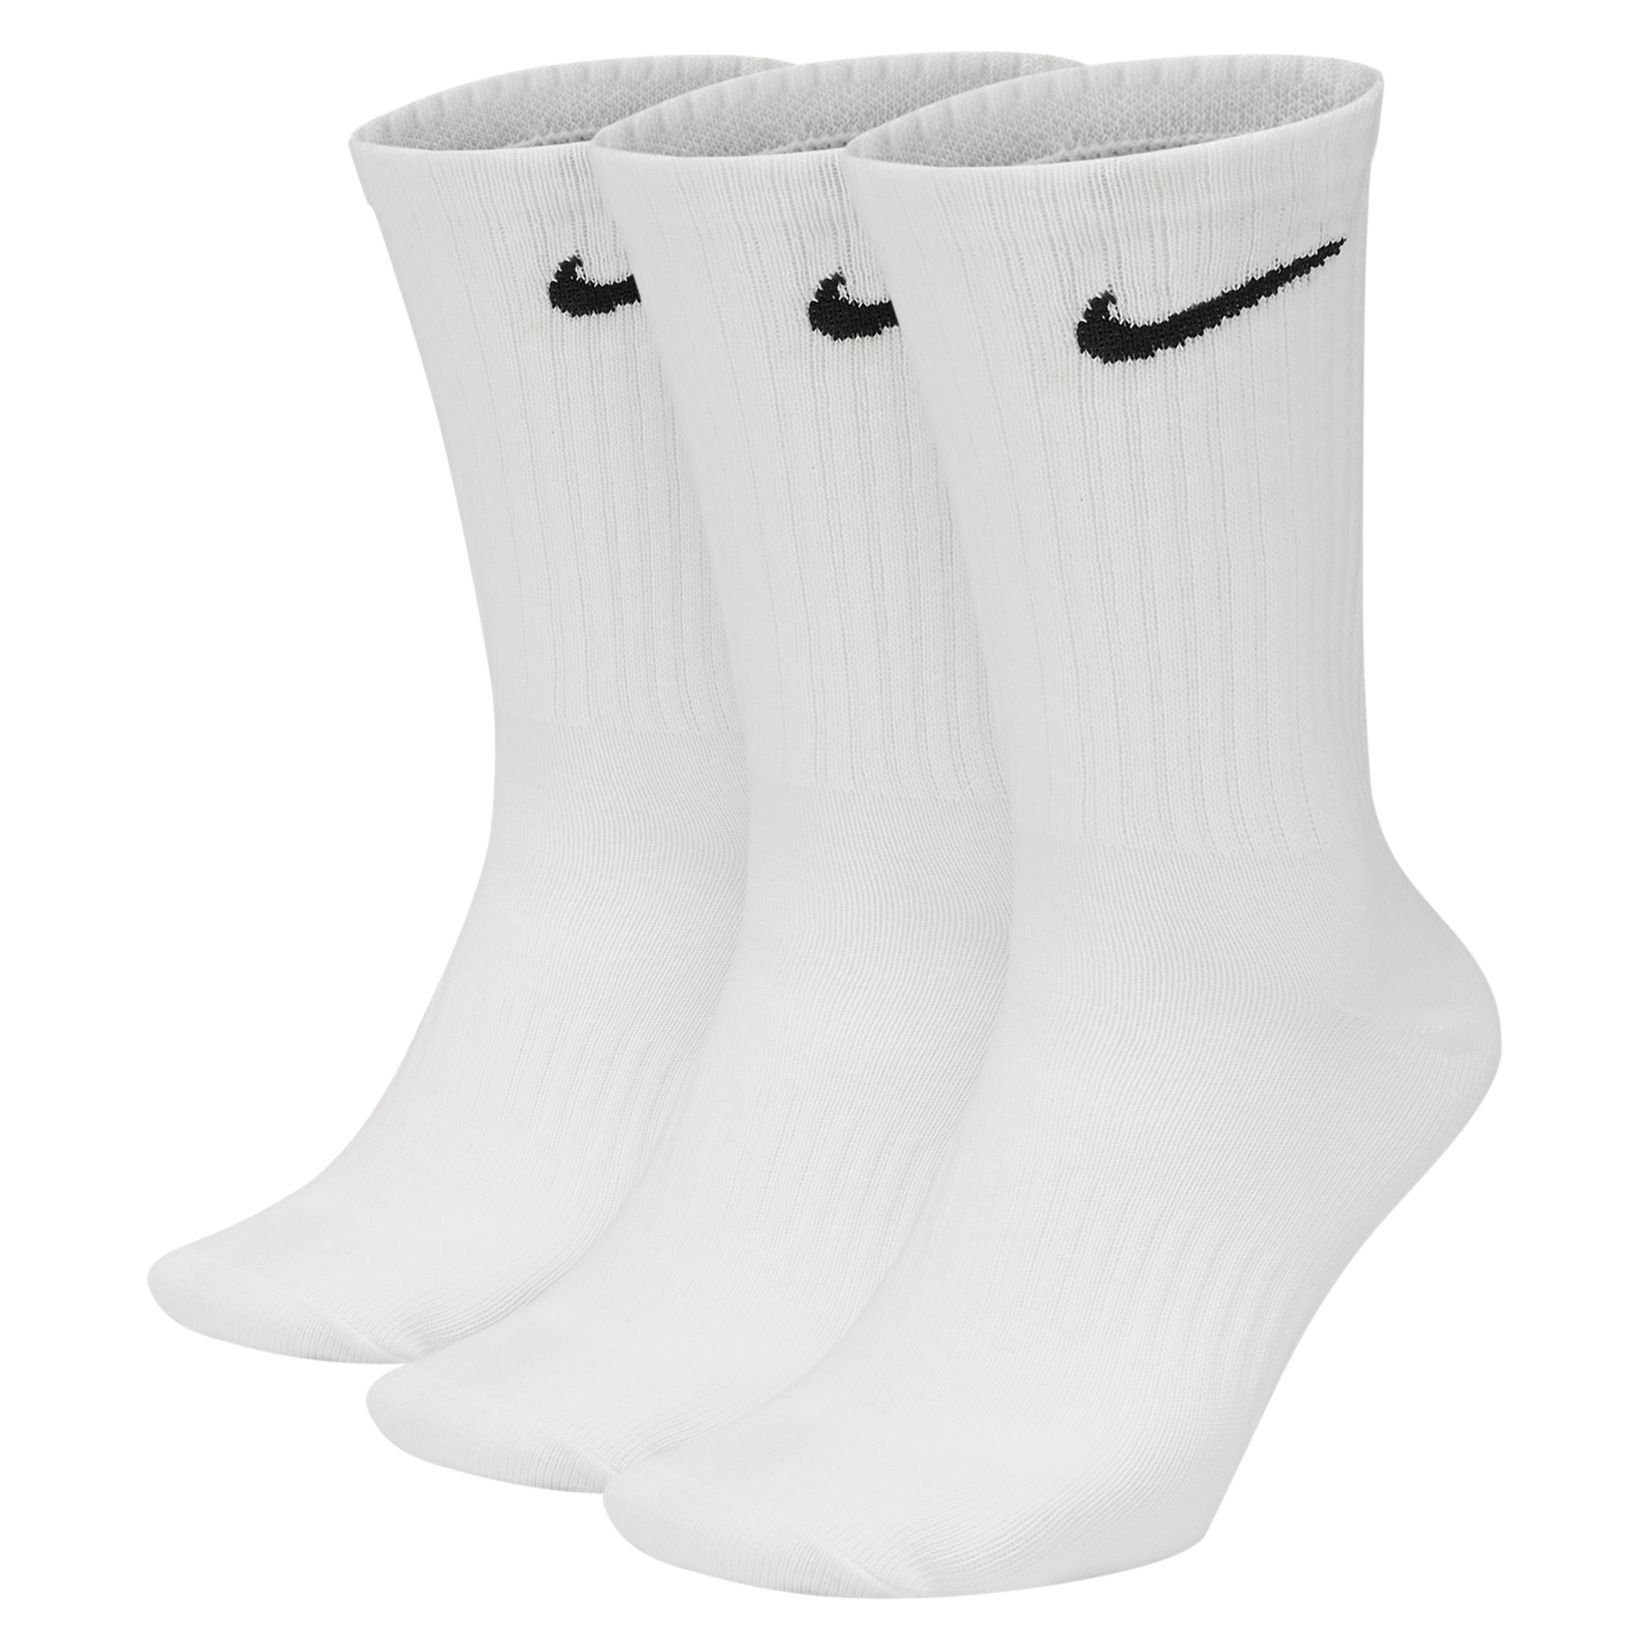 where can i buy white nike socks